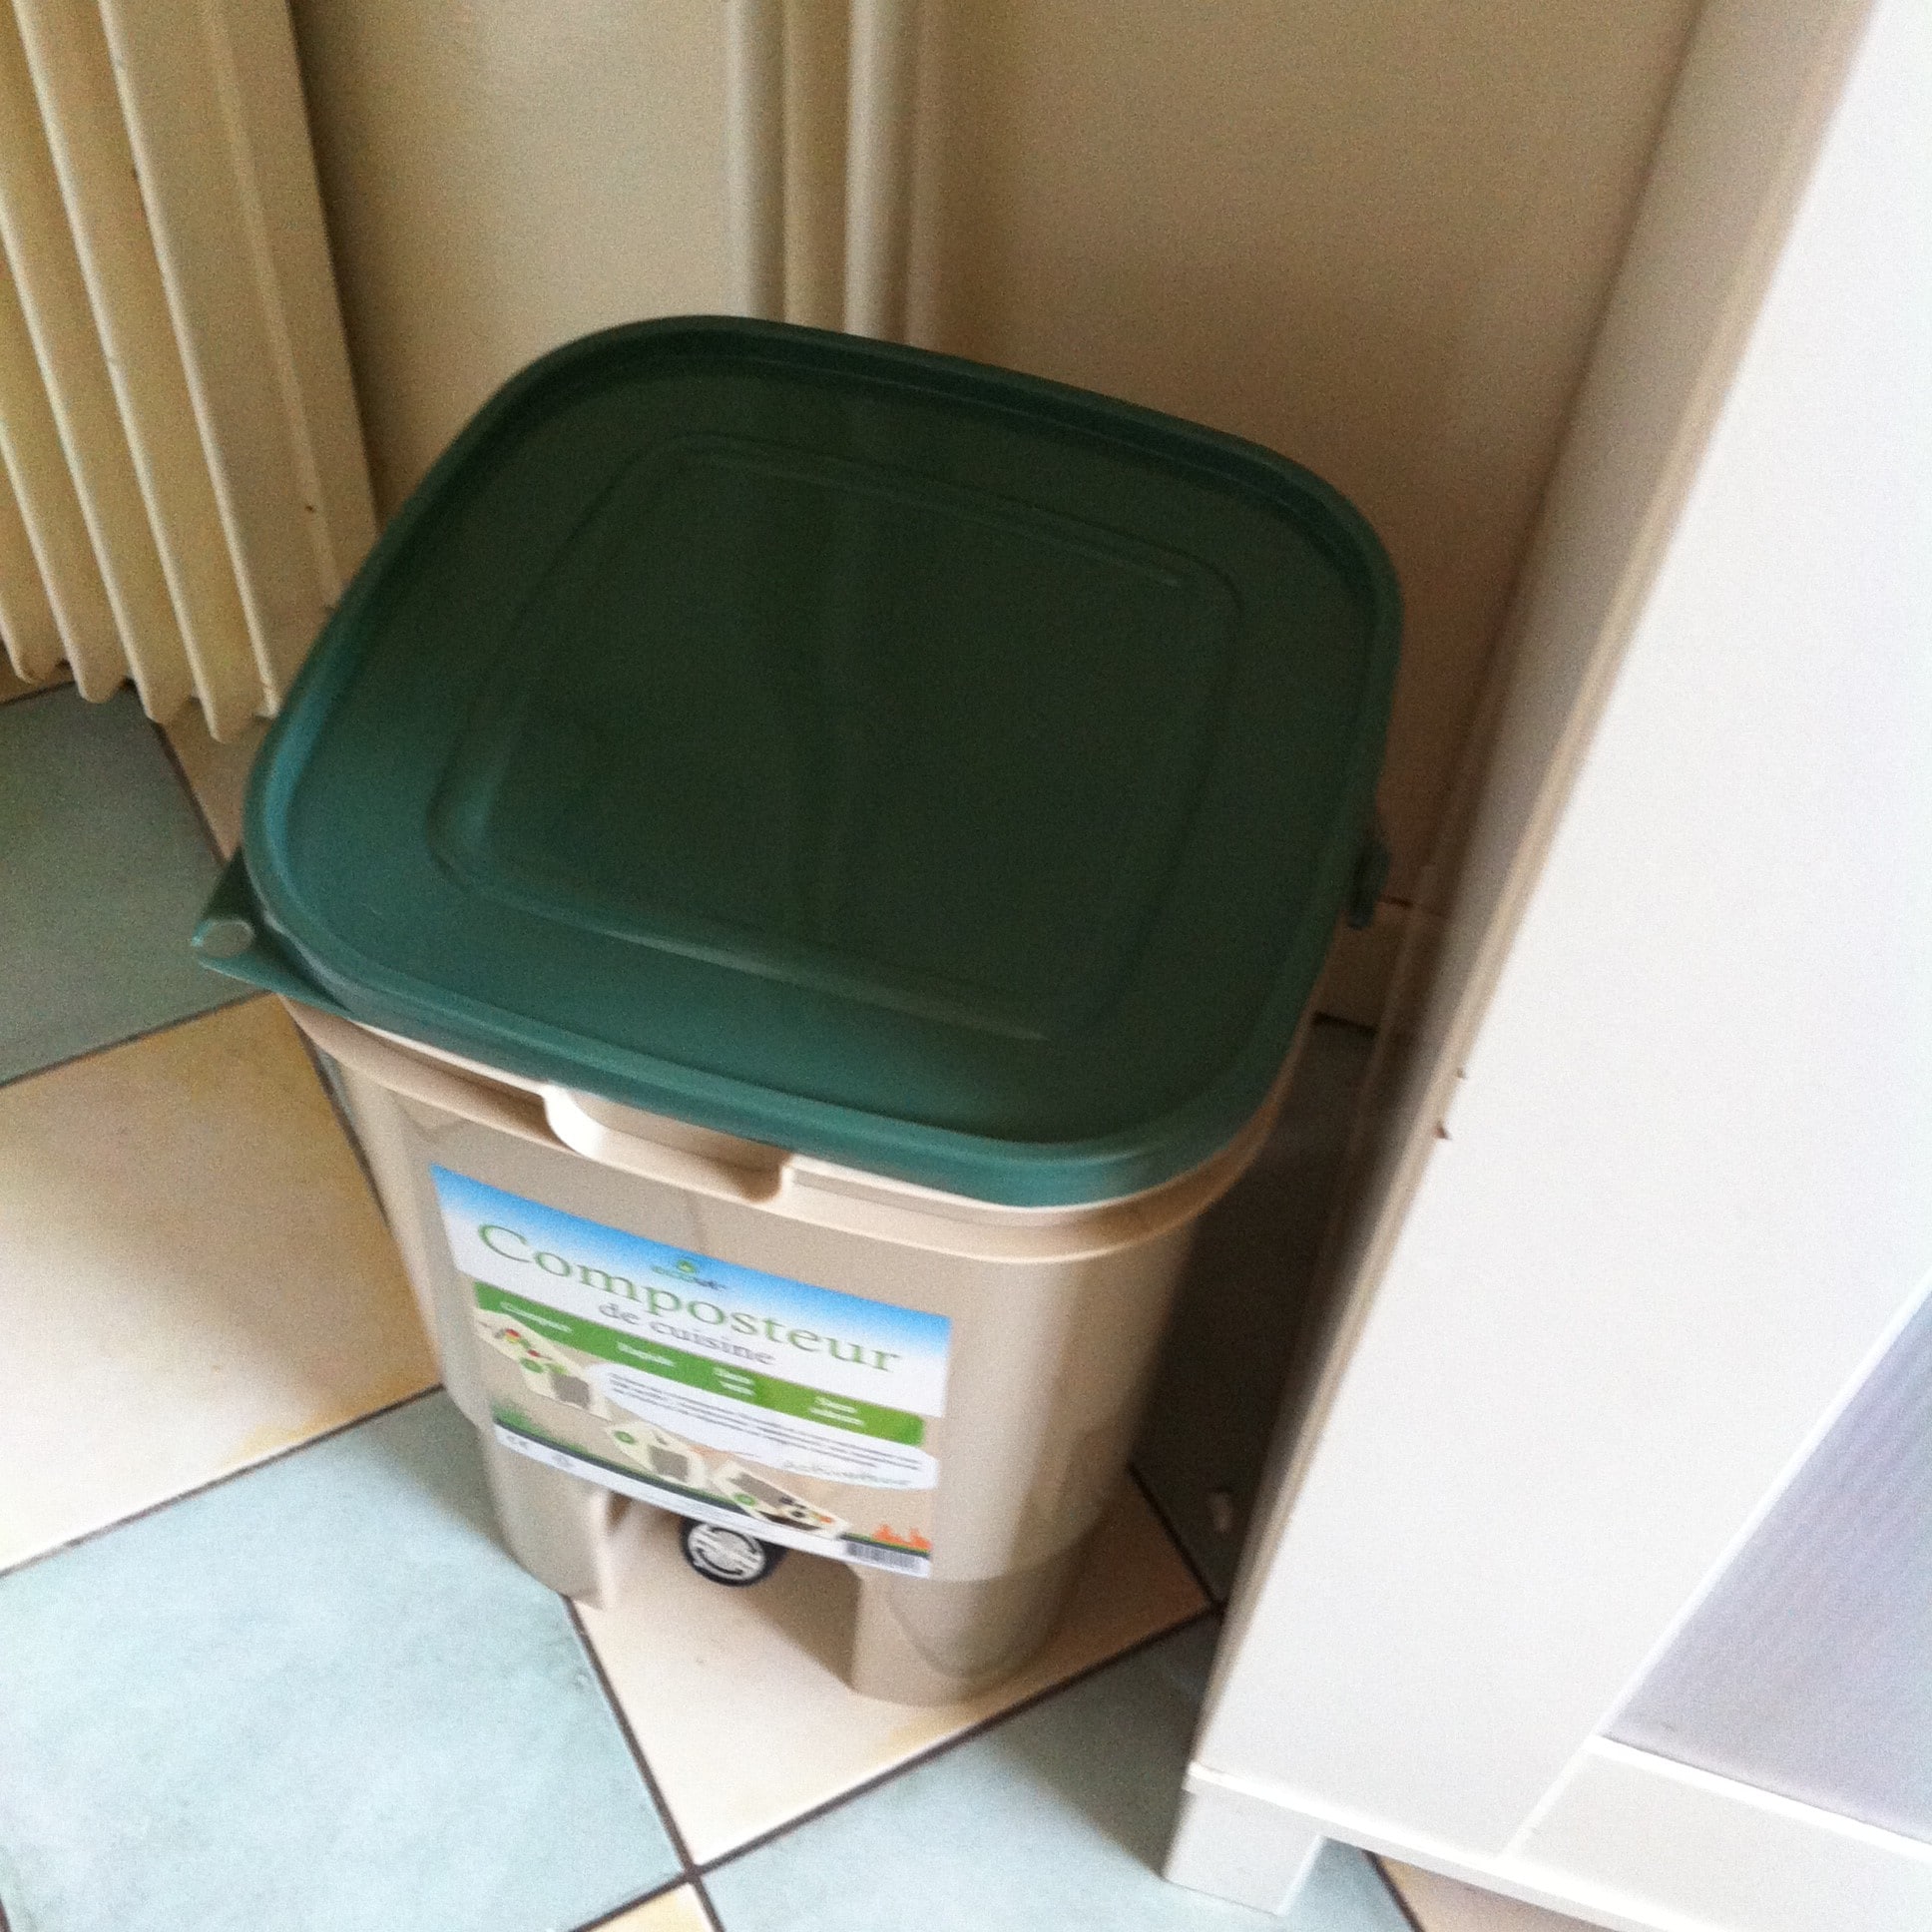 Composteur plastique - Faire un composteur avec une poubelle en